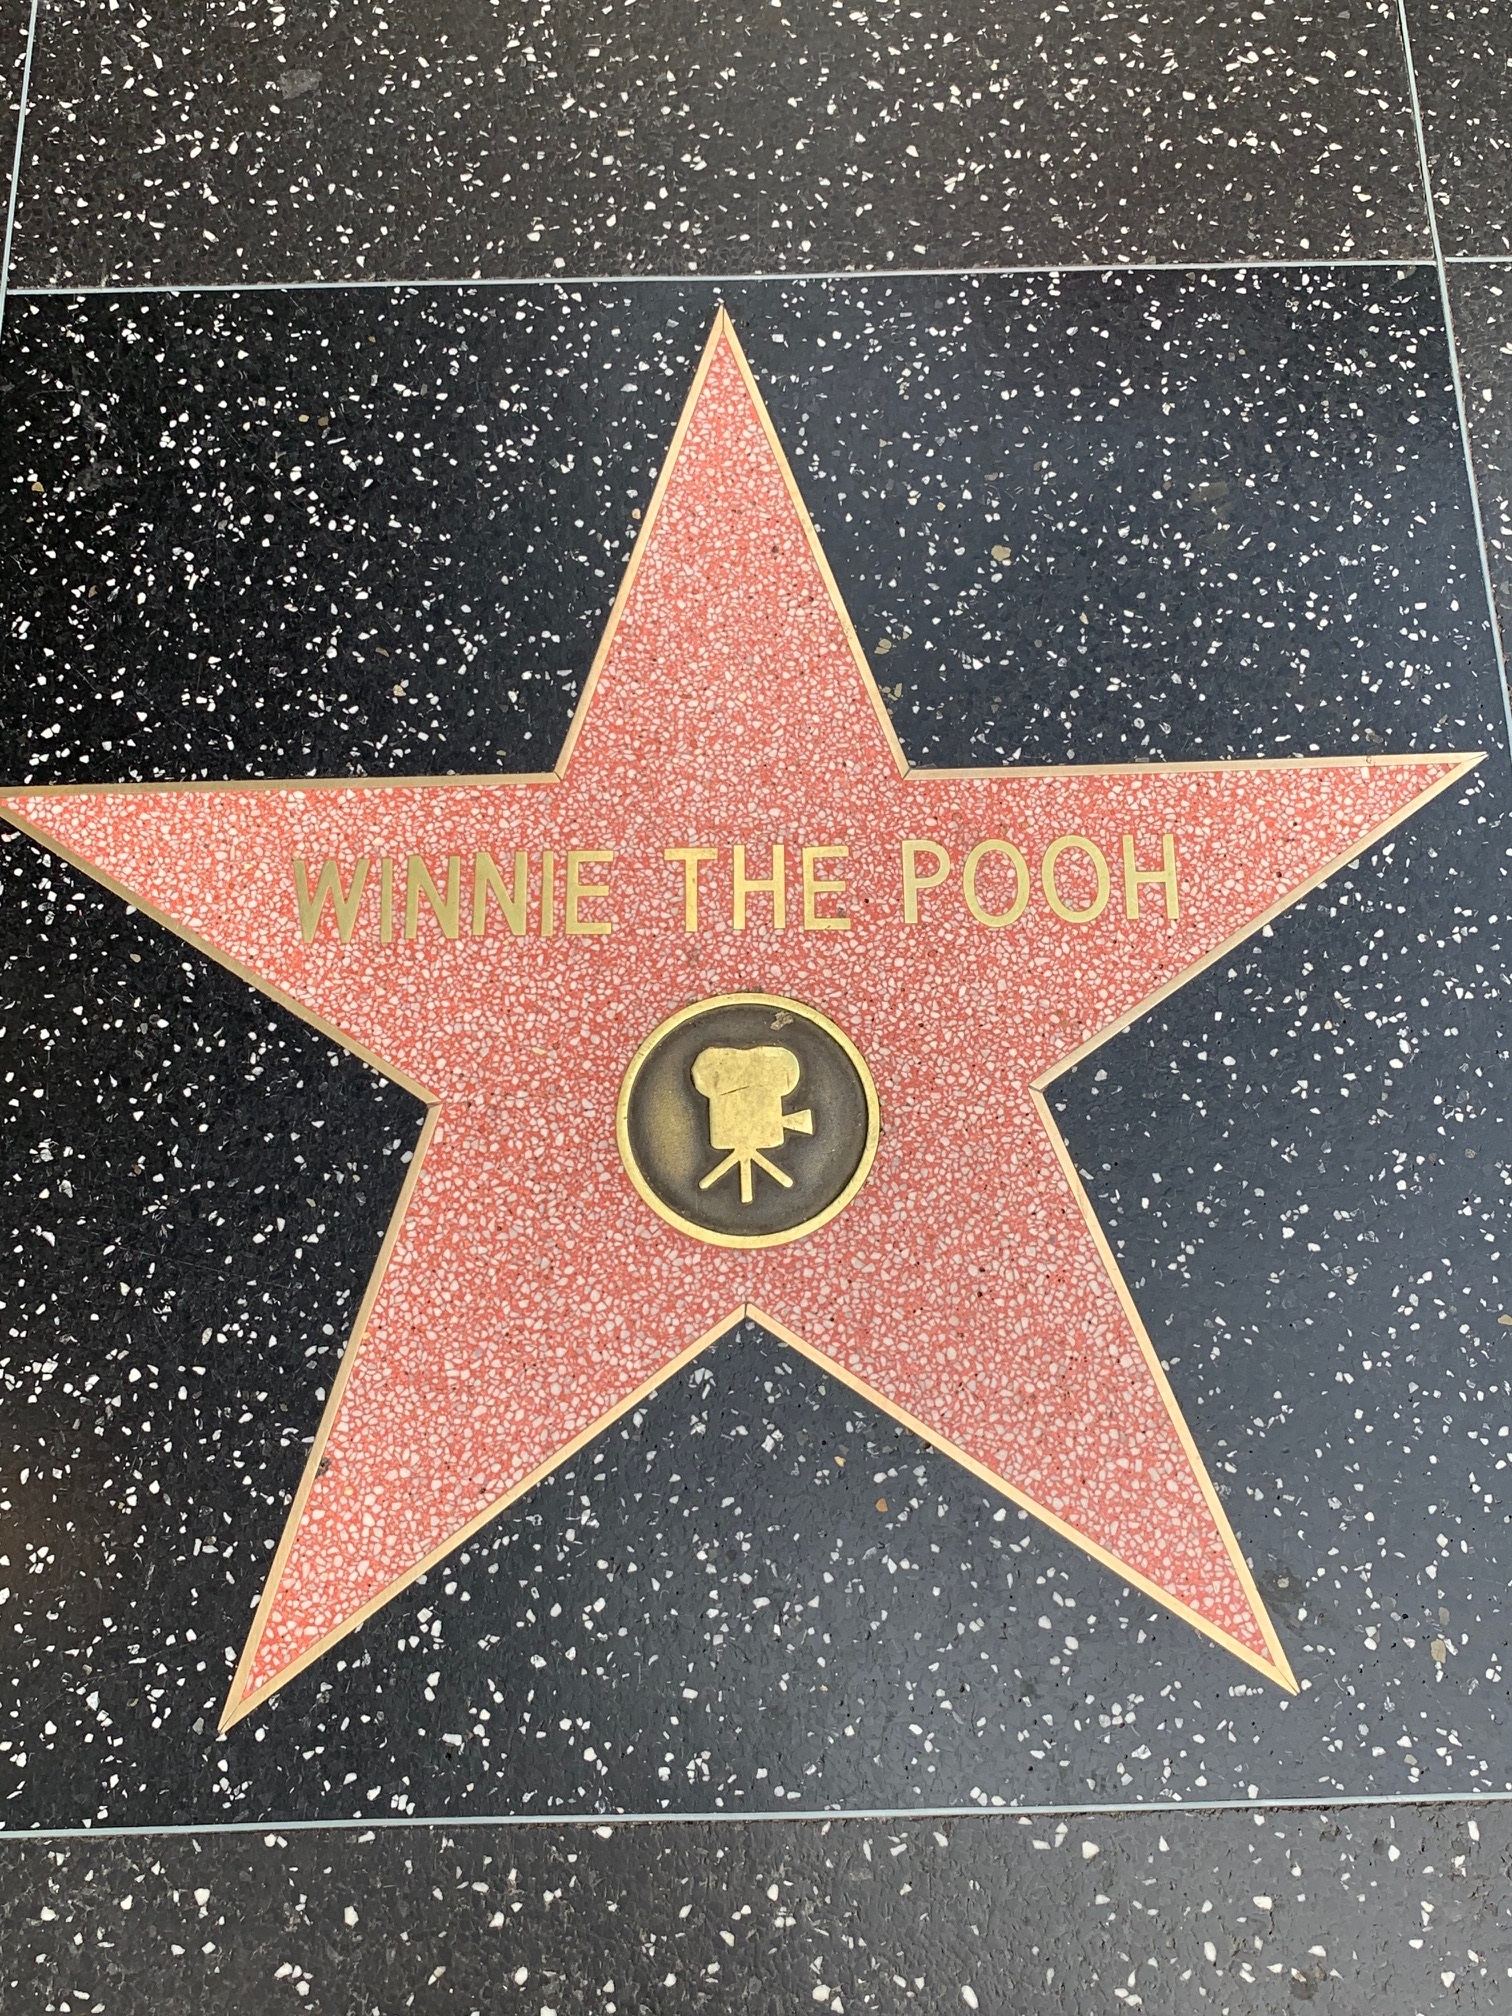 Winnie the Pooh star